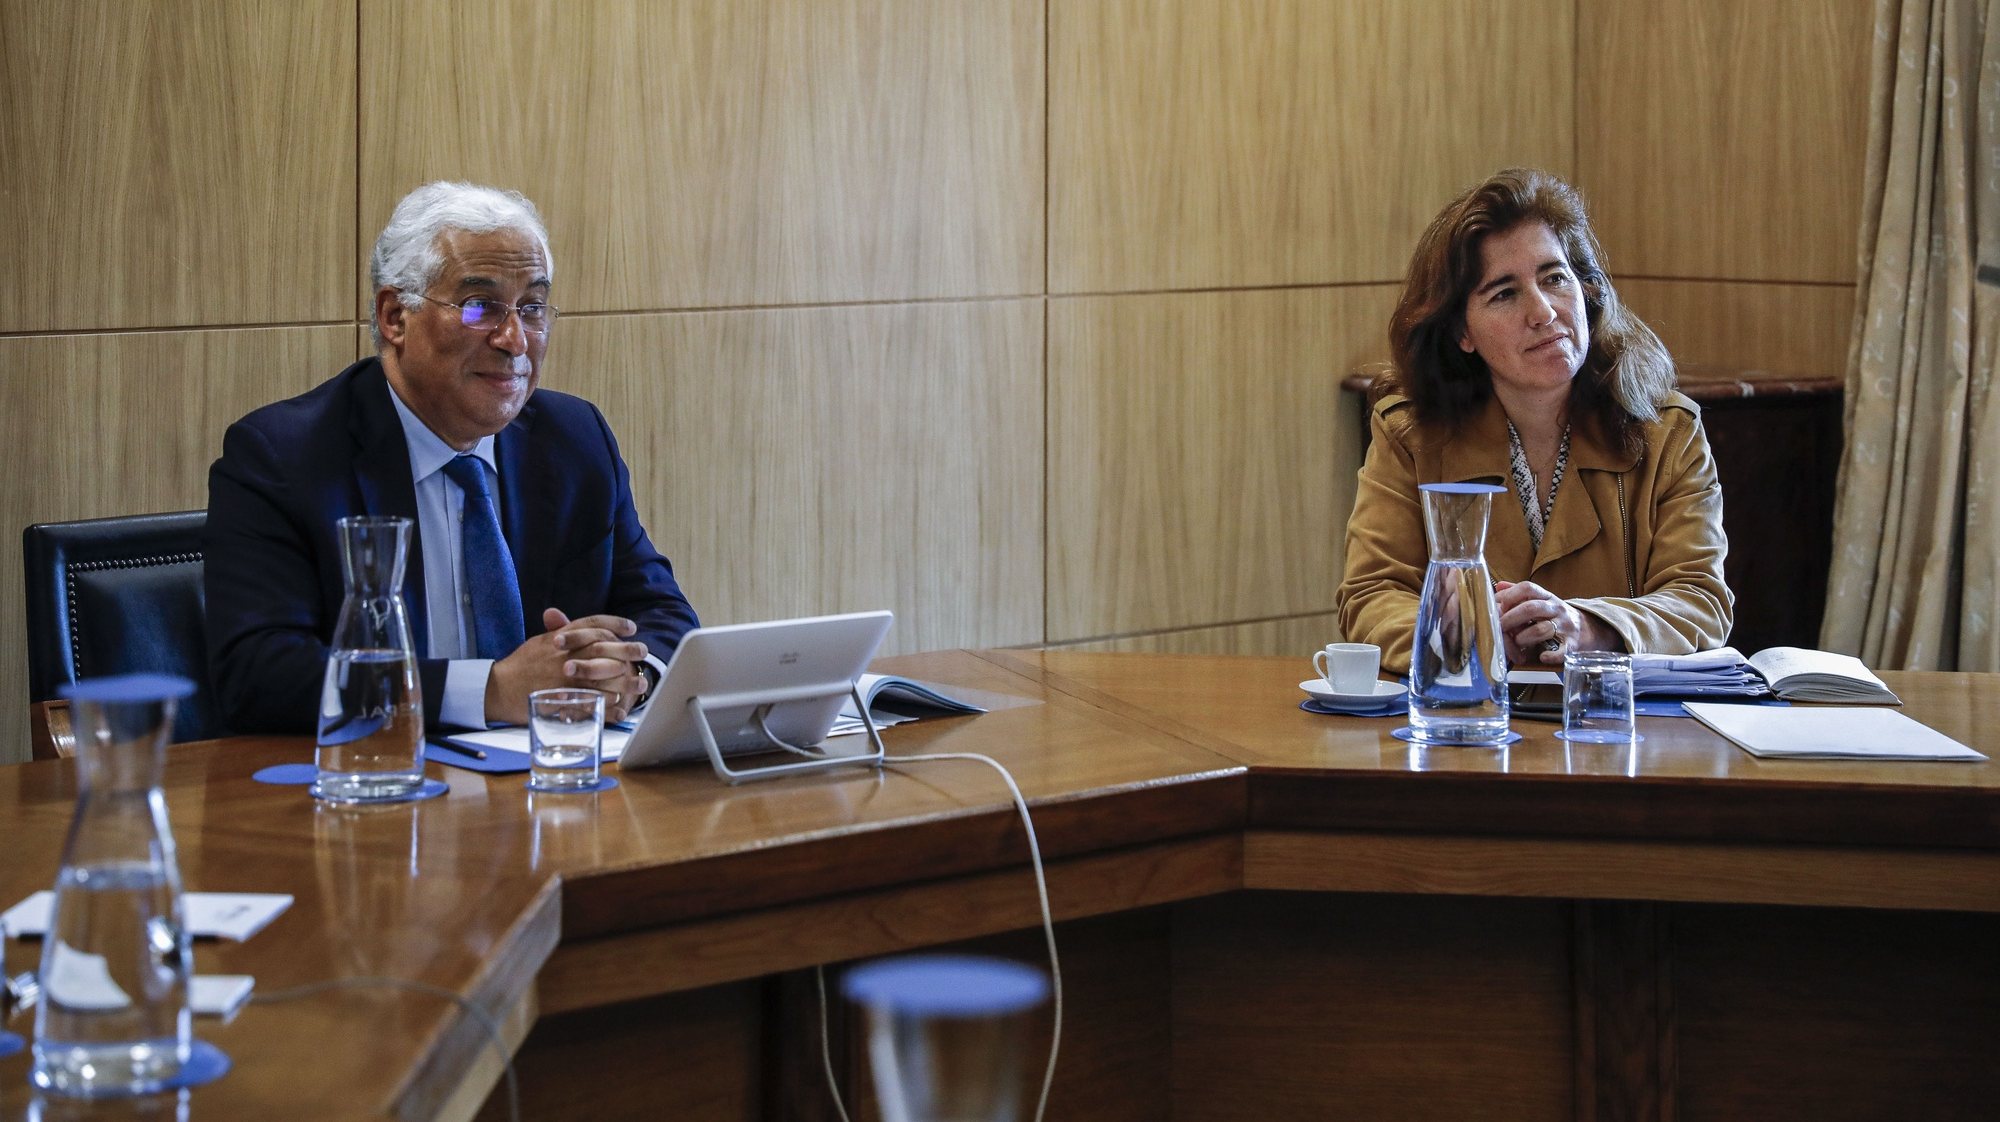 O primeiro-ministro, António Costa (E) acompanhado da ministra do Trabalho, Solidariedade e Segurança Social, Ana Mendes Godinho (D), durante a reunião da Comissão Permanente de Concertação Social para preparação do conselho europeu, em Lisboa, 21 de abril de 2020. RODRIGO ANTUNES/LUSA